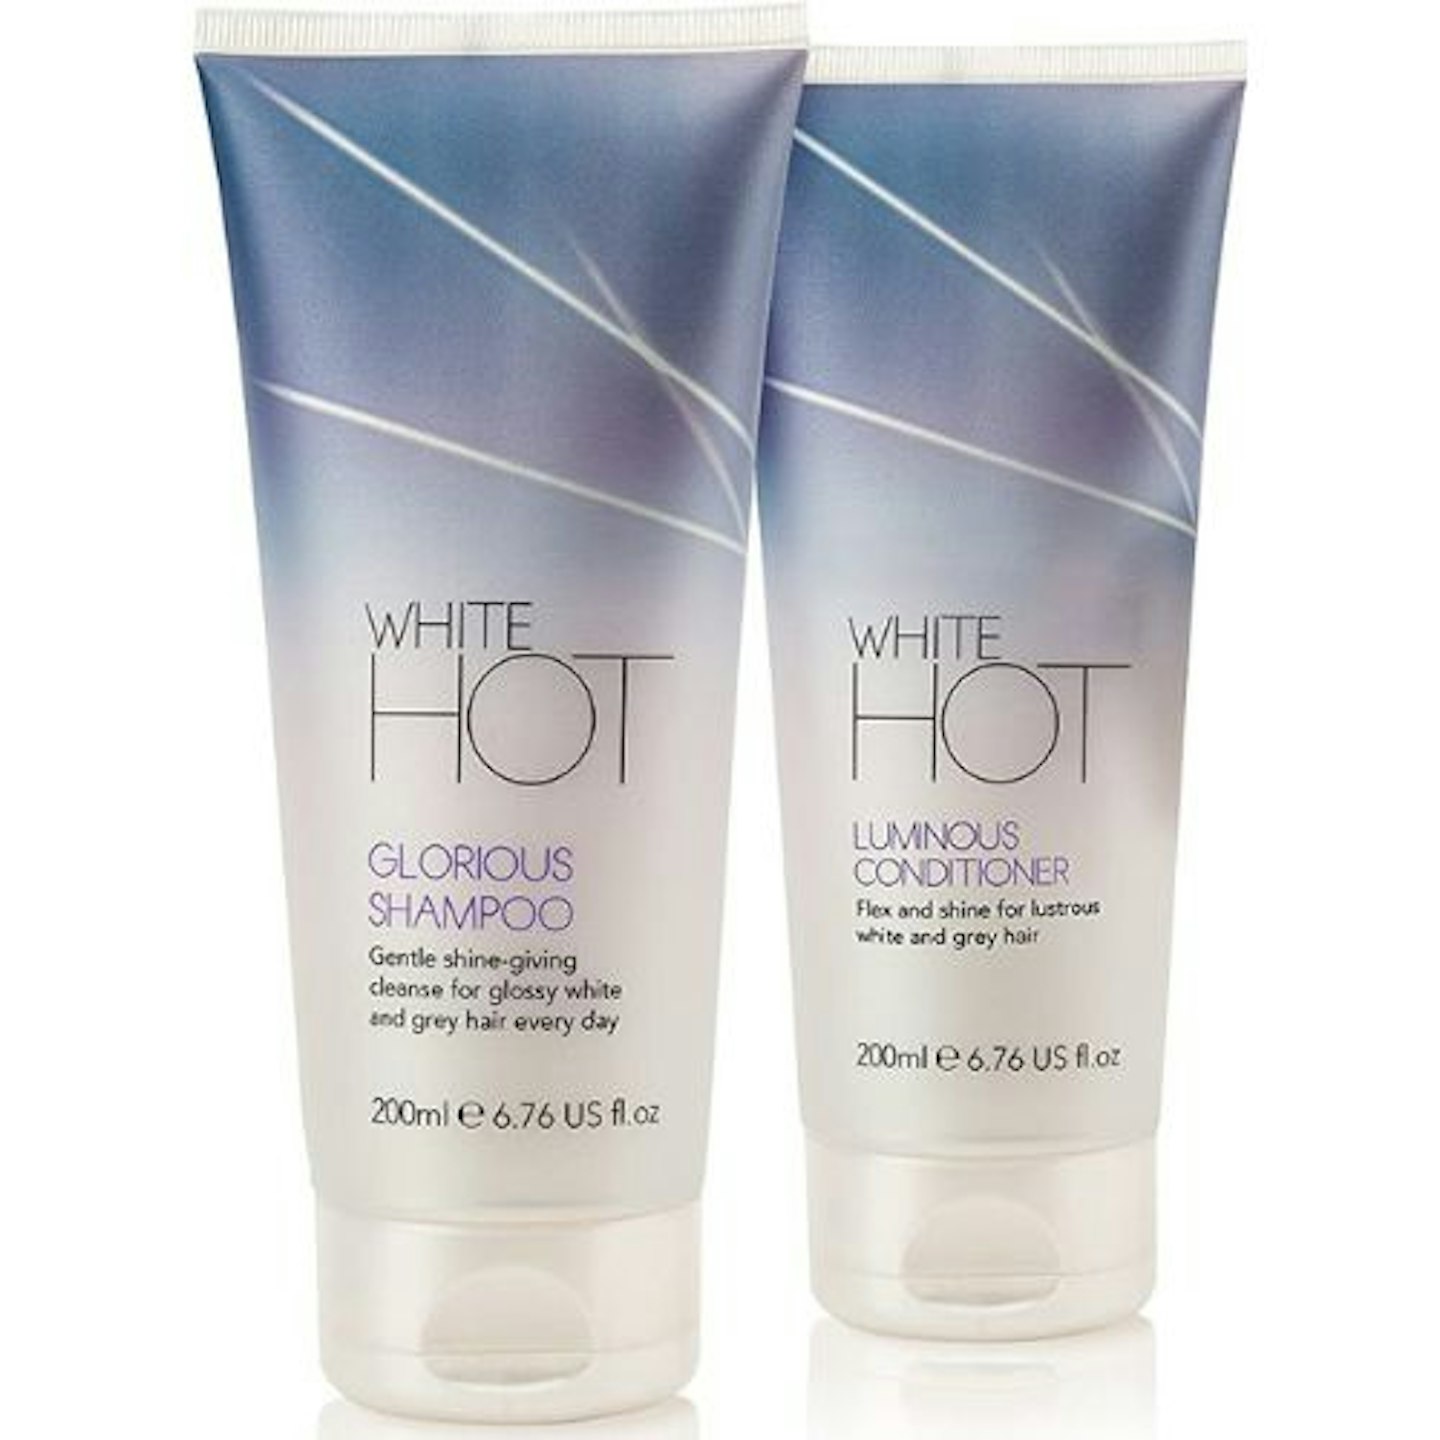 White Hot Shine Duo: Glorious Shampoo & Luminous Conditioner